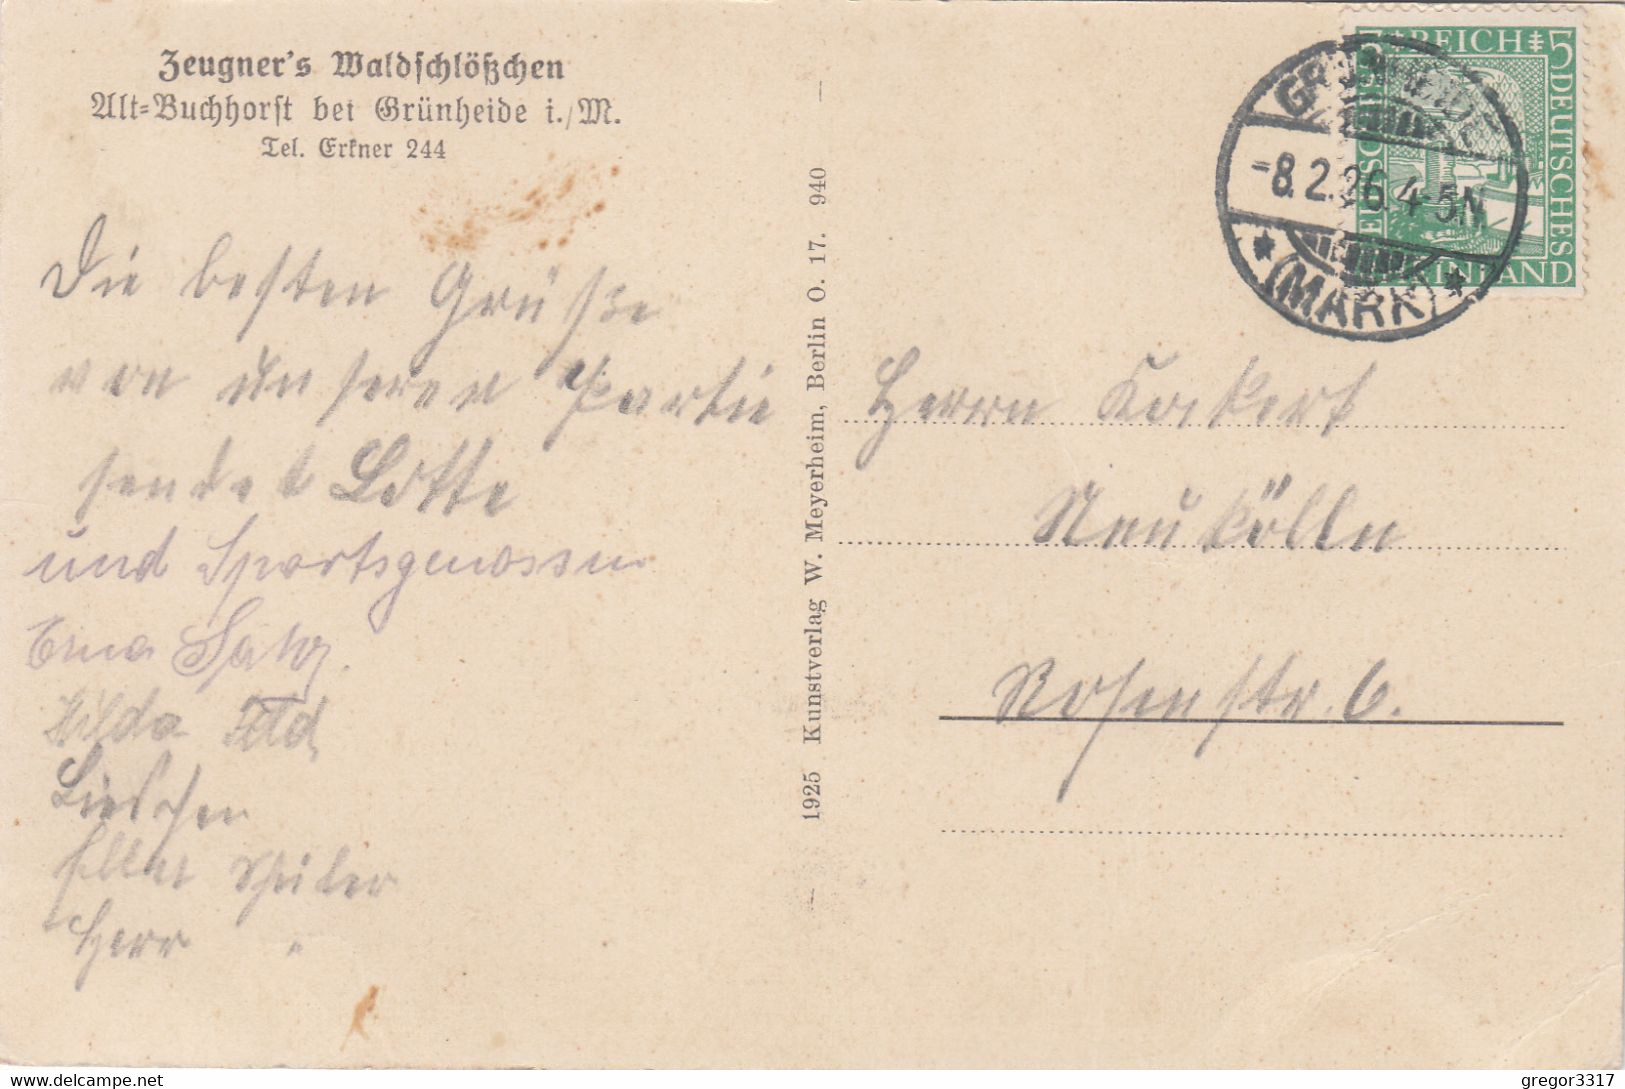 A115) ALT BUCHHORST I. M. - Möllensee Partie Bei Der Spiegelquelle ALT !! 08.02.1926 - Grünheide